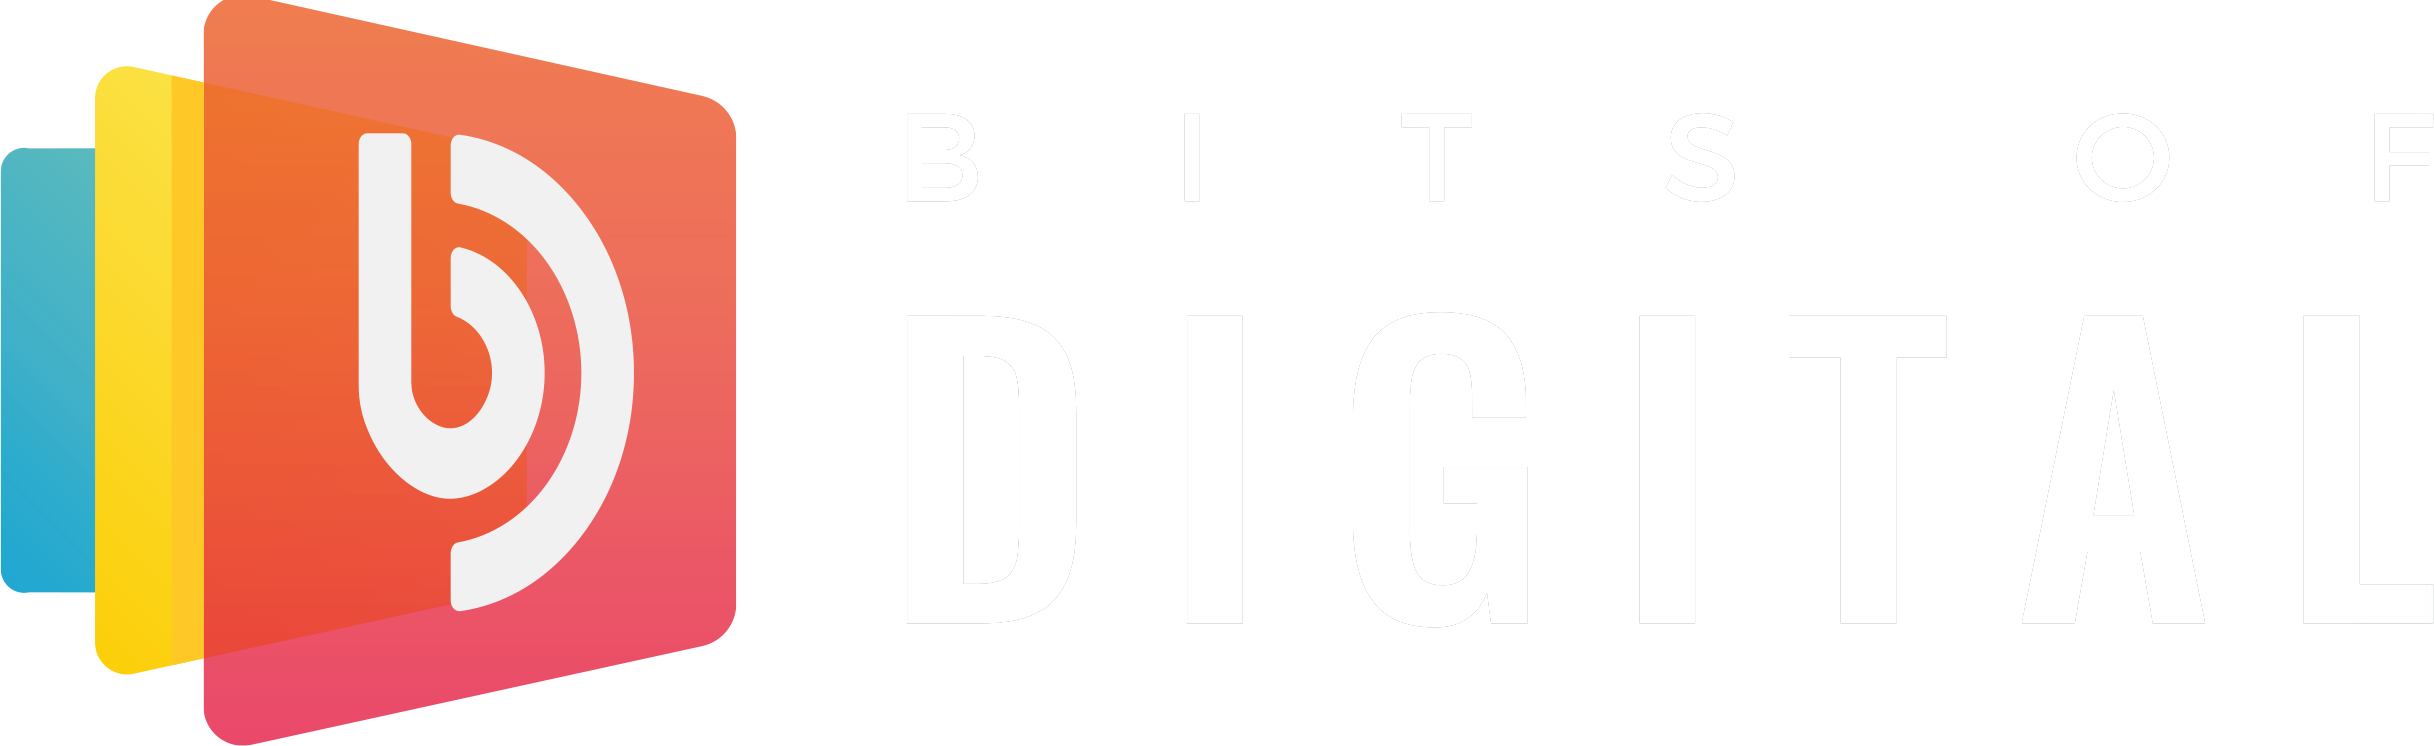 Bits Of Digital